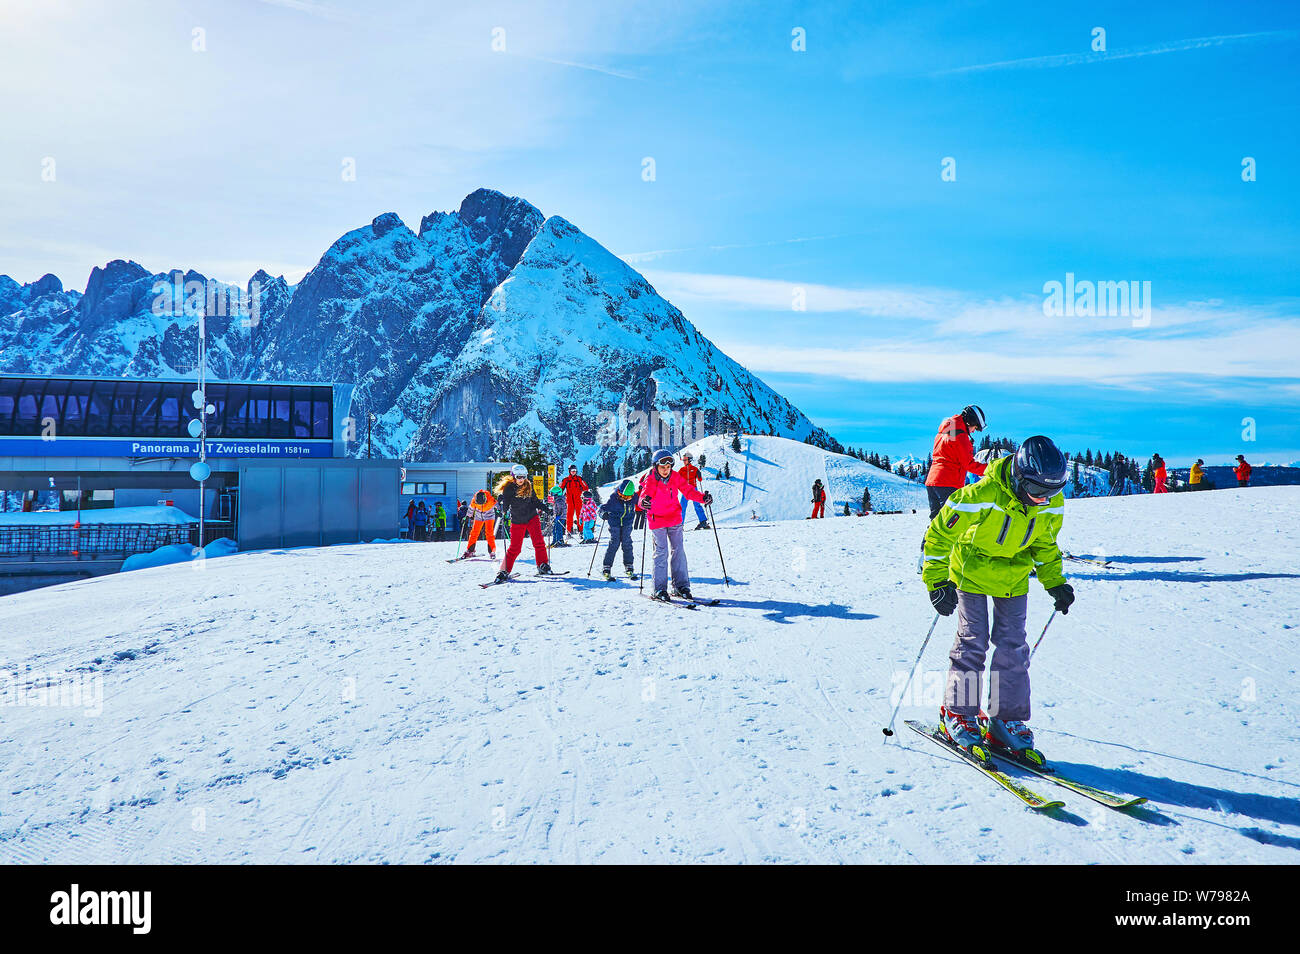 GOSAU, Österreich - 26. FEBRUAR 2019: Zwieselalm Ski Resort, in Dachstein West Alpen des Salzkammergutes gelegen, ist perfekt für Anfänger und Un Stockfoto